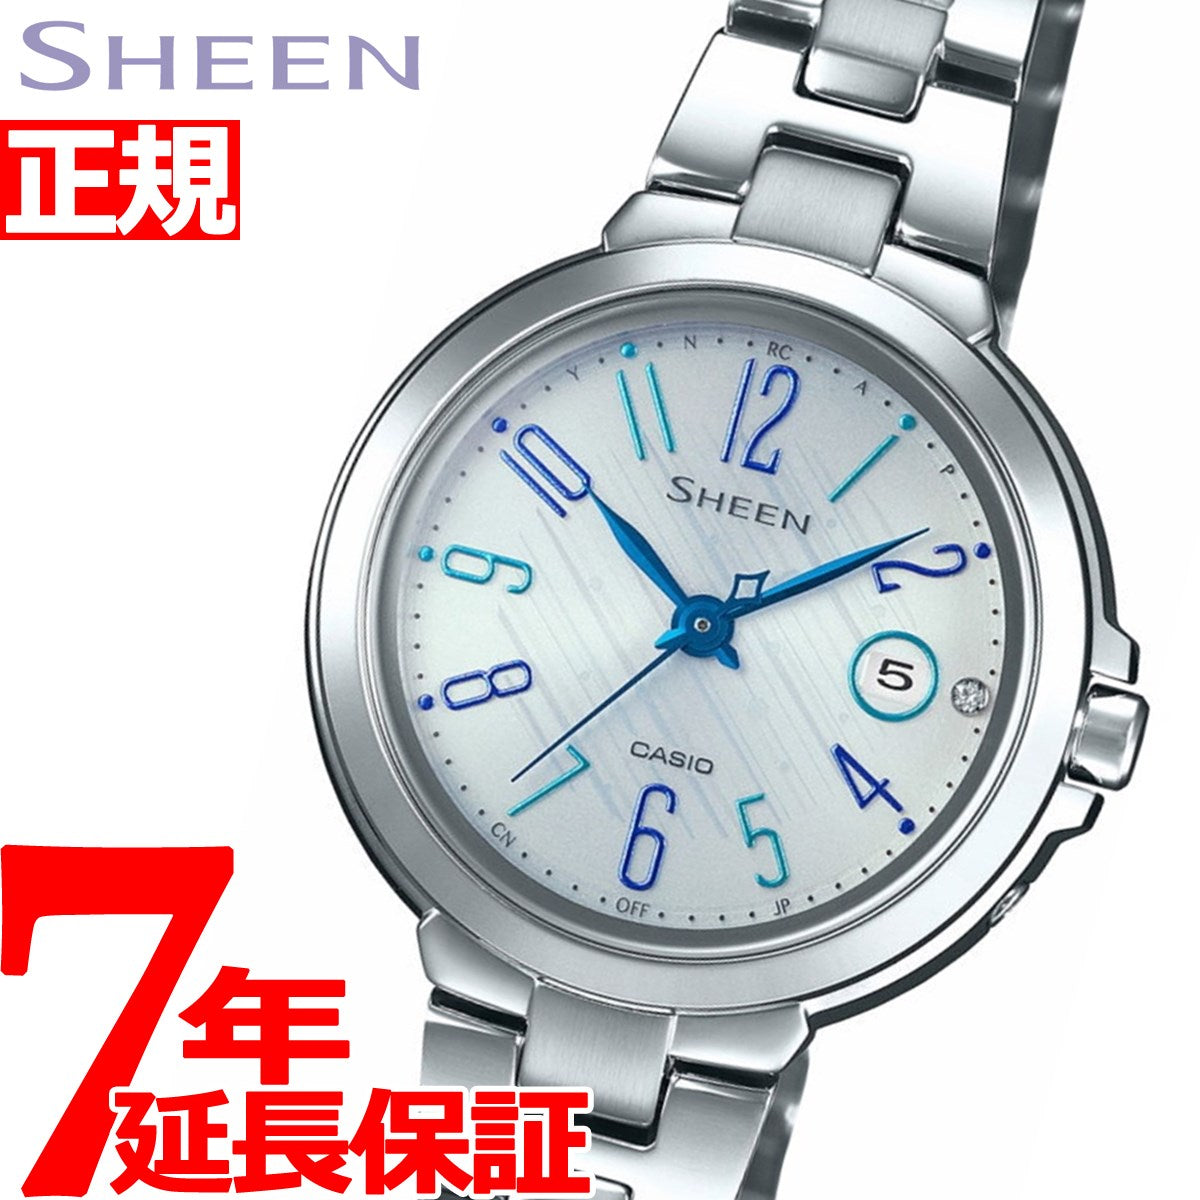 カシオ シーン CASIO SHEEN 電波 ソーラー 電波時計 腕時計 レディース SHW-5100D-7AJF